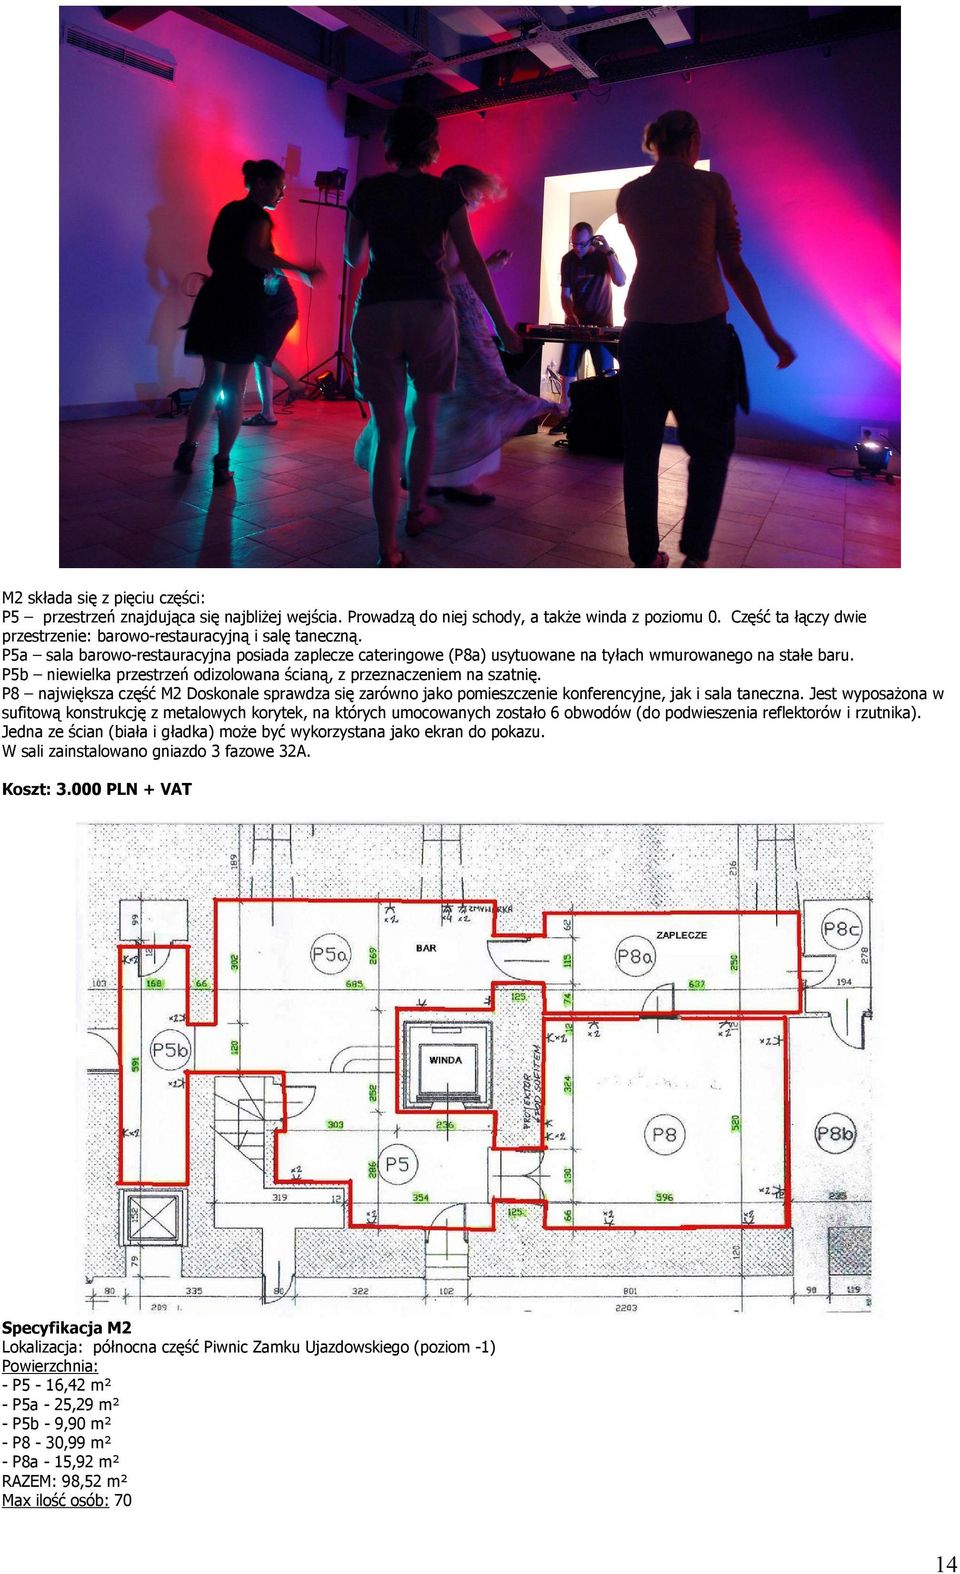 P5b niewielka przestrzeń odizolowana ścianą, z przeznaczeniem na szatnię. P8 największa część M2 Doskonale sprawdza się zarówno jako pomieszczenie konferencyjne, jak i sala taneczna.